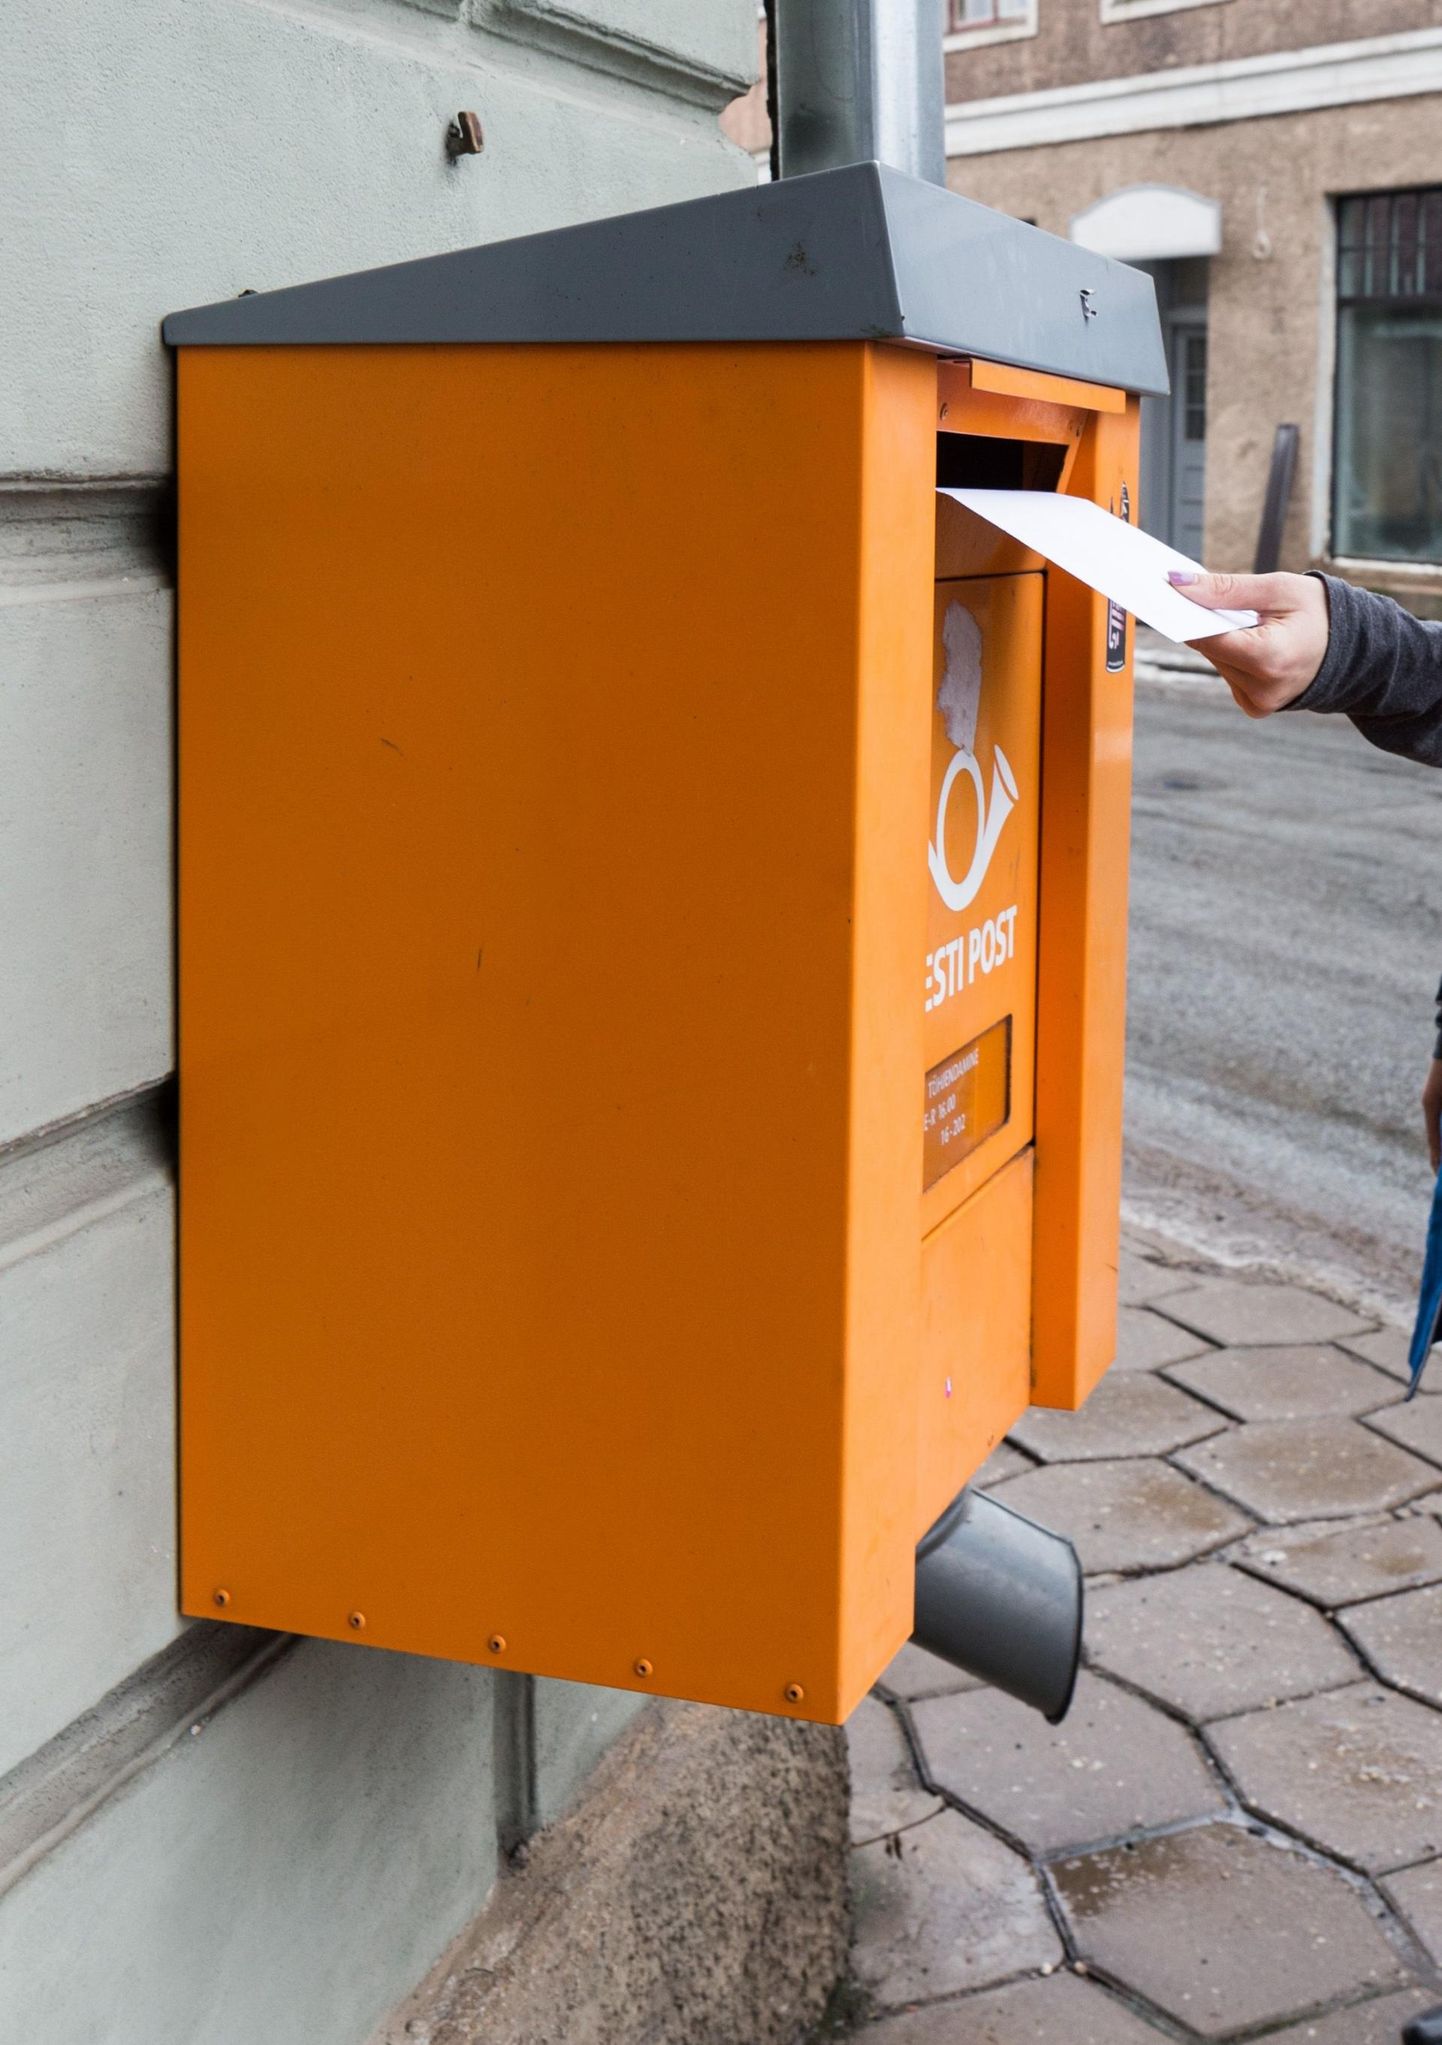 Postipunkti teenuseid tuleb ajutiselt  otsida kodukohast veidi kaugemalt.